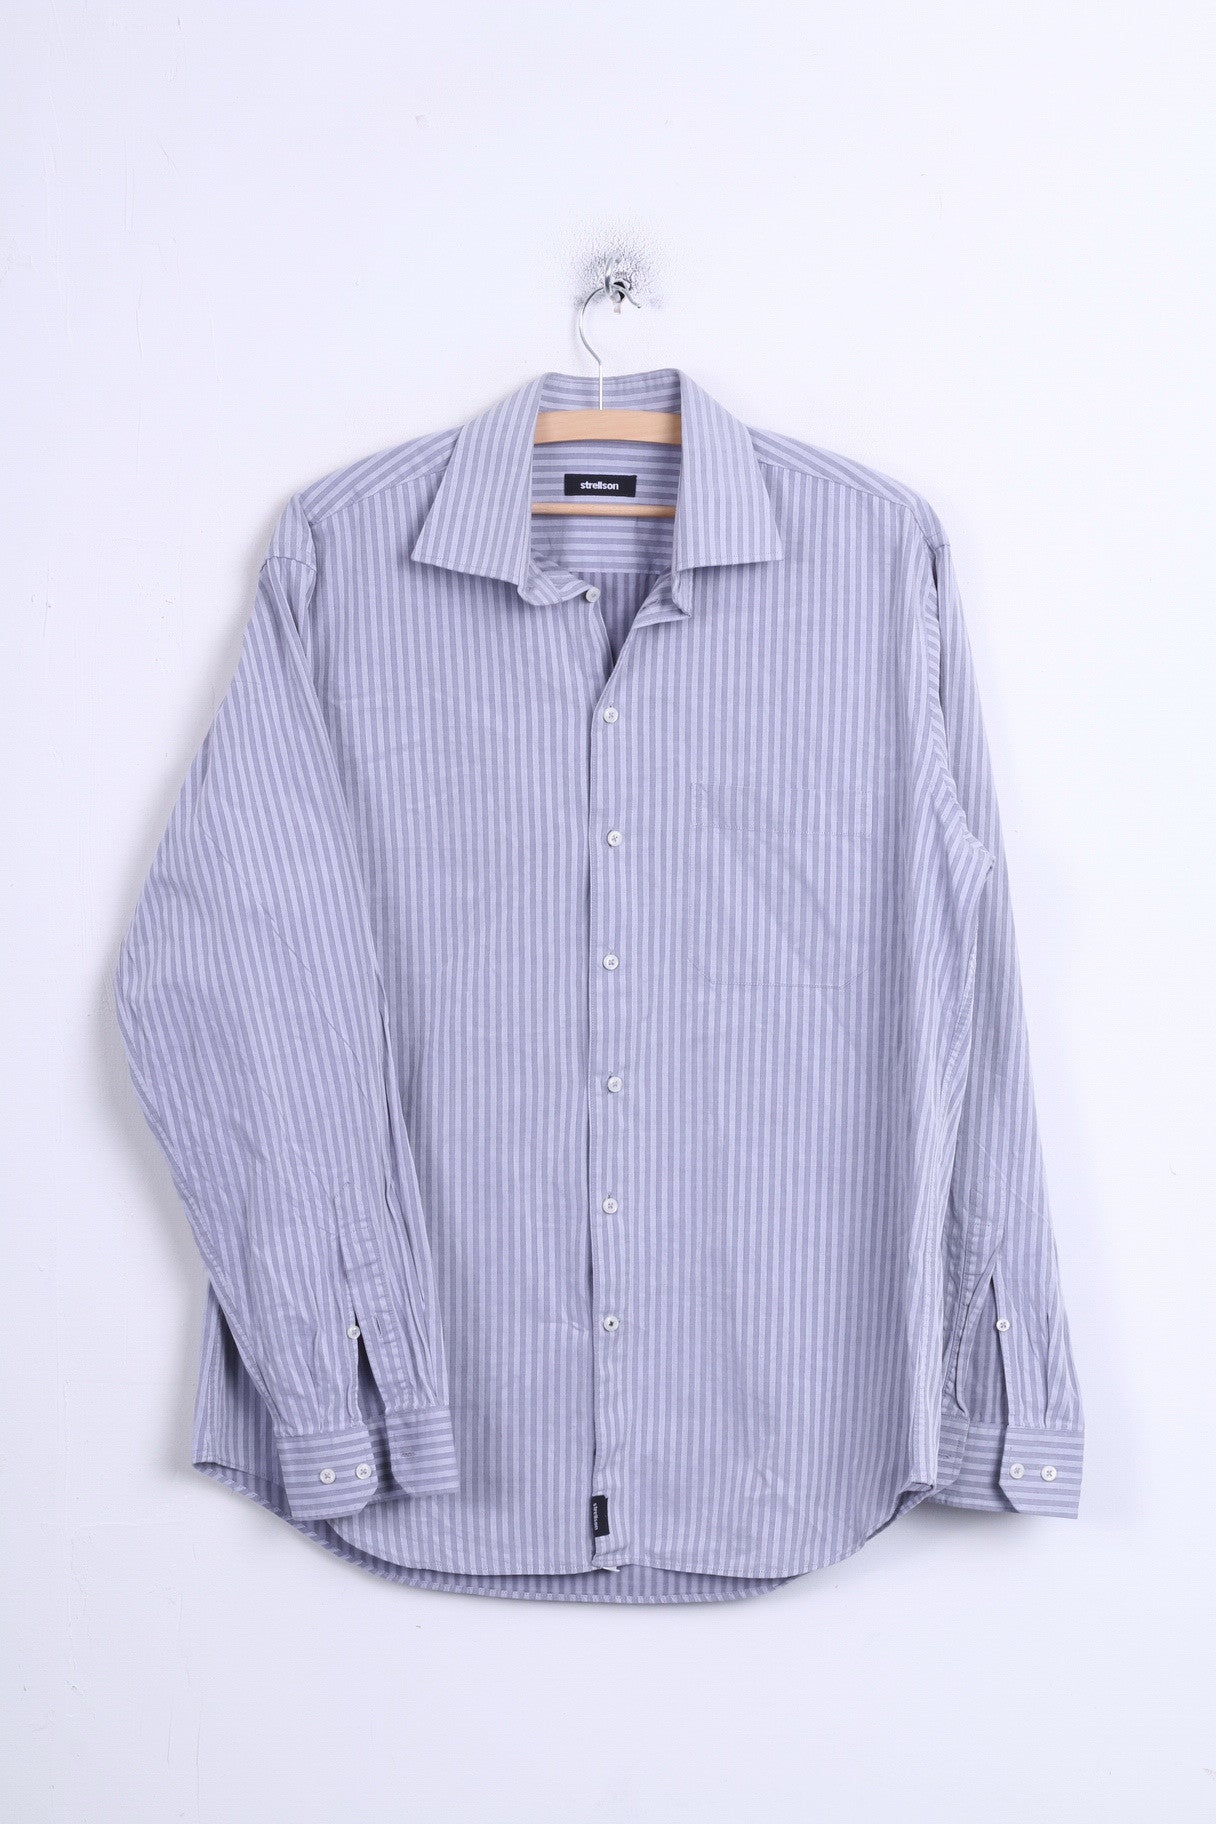 Strellson Mens 41 16 Casual Shirt Striped Cotton Grey Standard Collar - RetrospectClothes